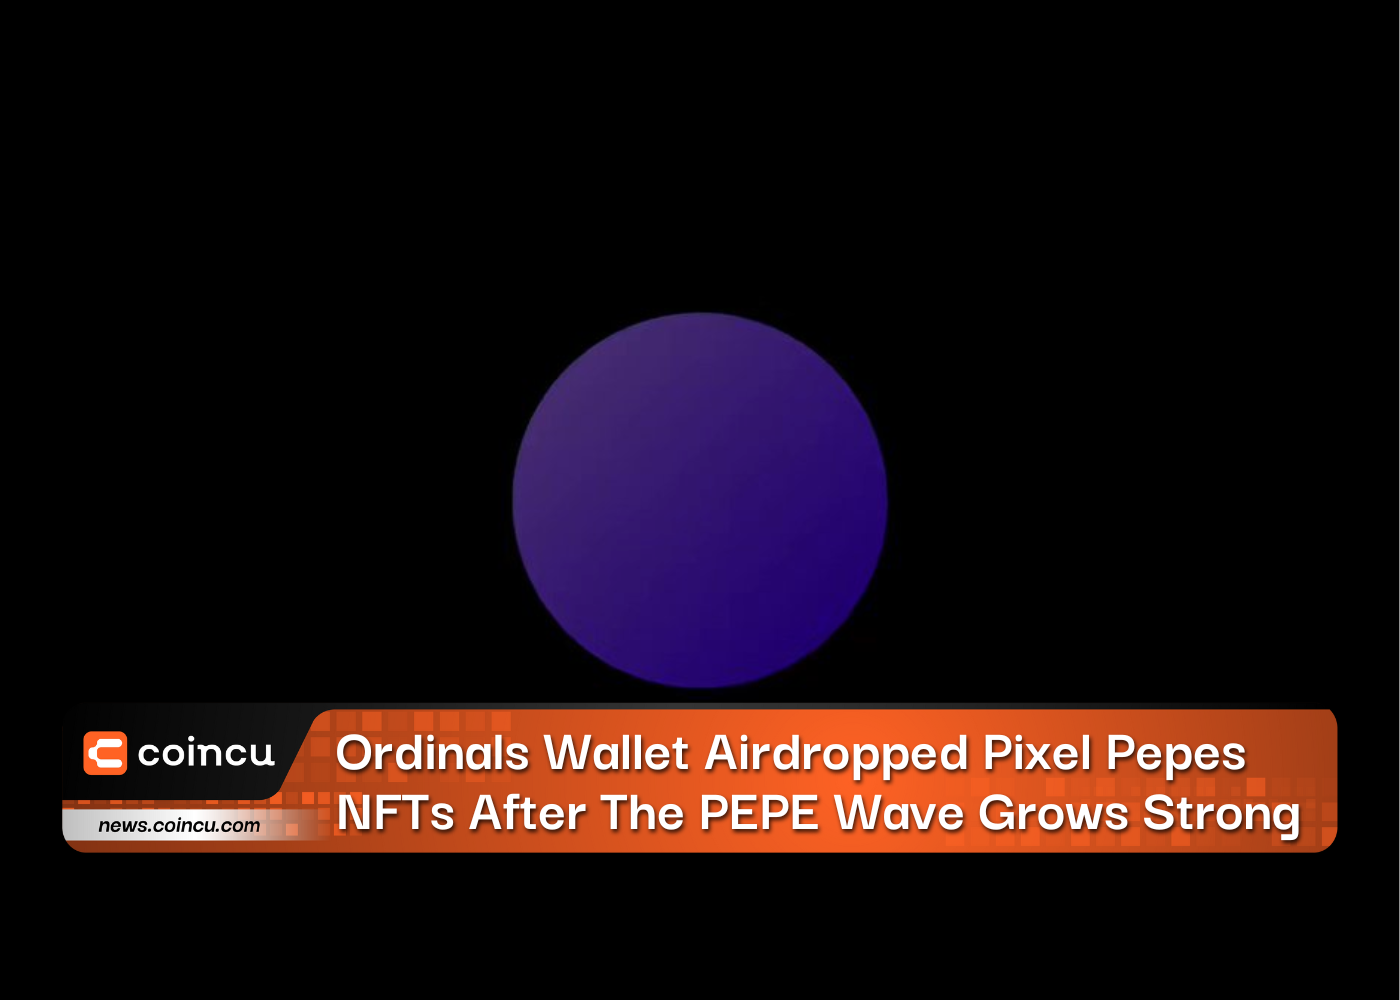 Ordinals Wallet ließ Pixel-Pepes-NFTs aus der Luft fallen, nachdem die PEPE-Welle stark zugenommen hatte